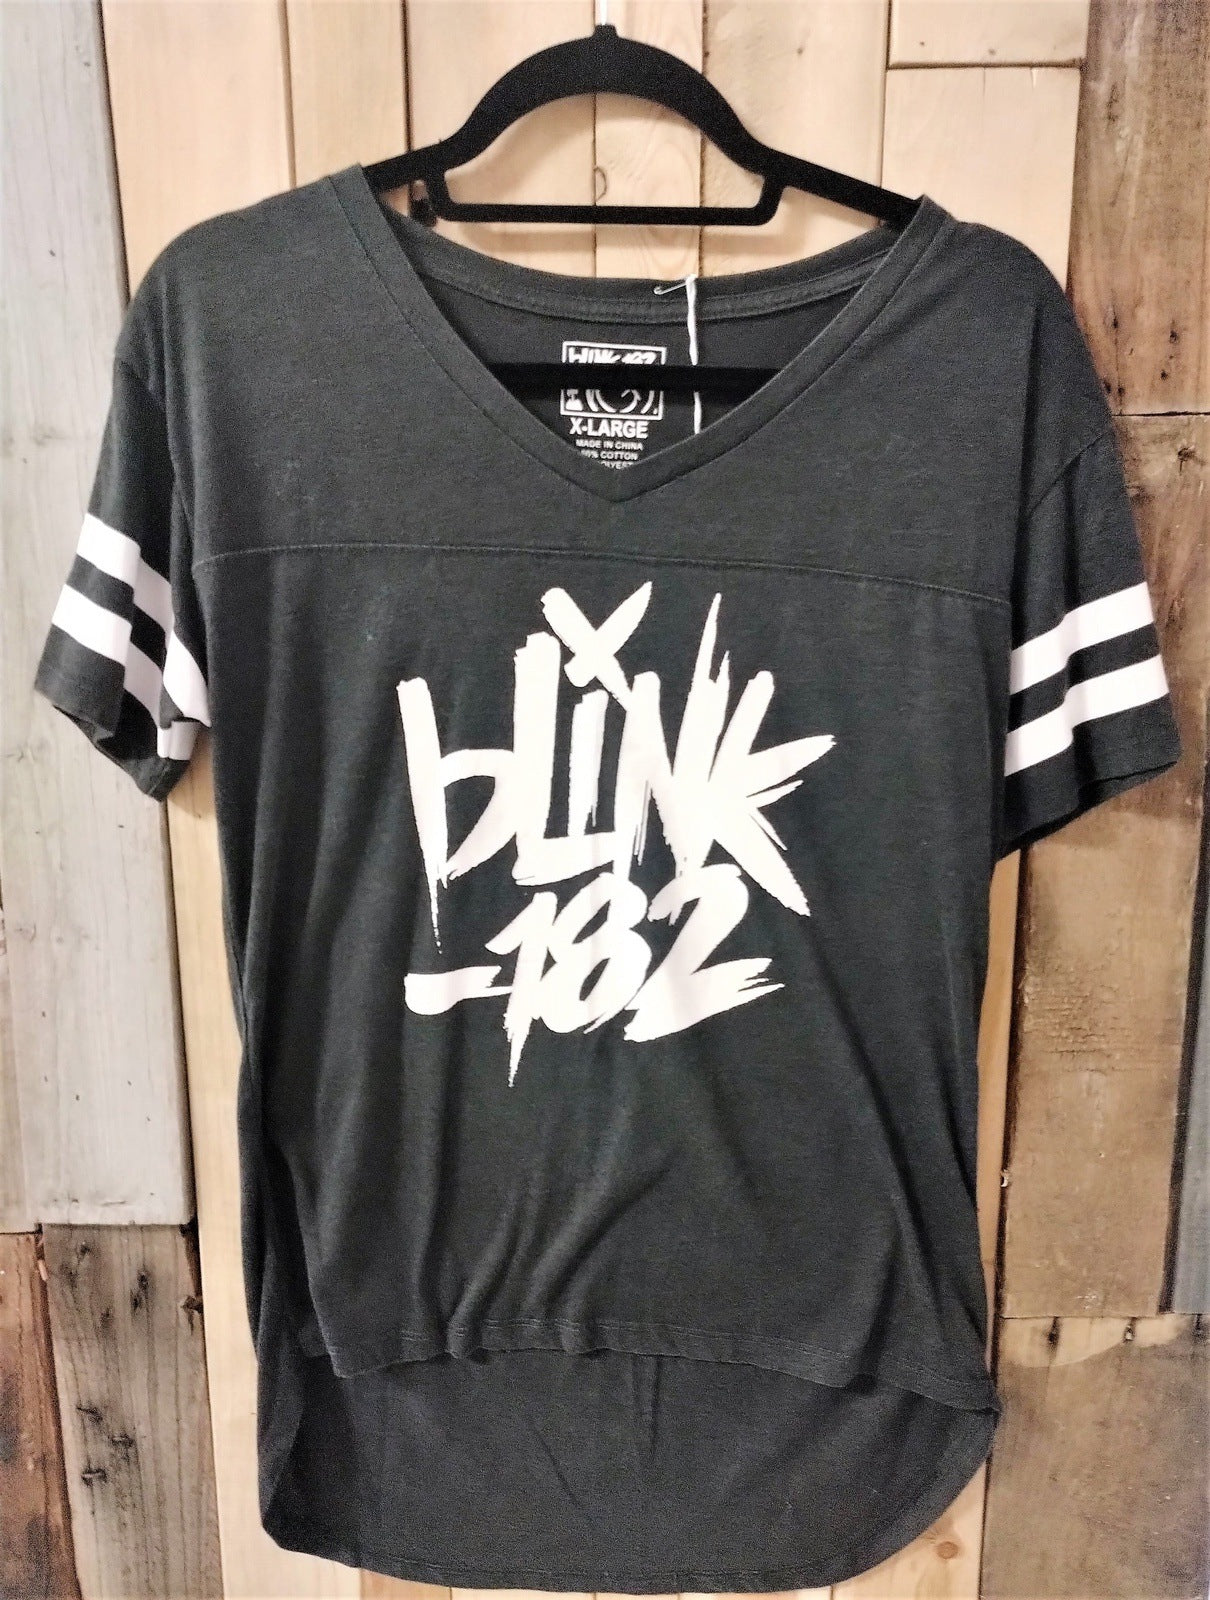 Blink 182 Women's XL Tee Shirt